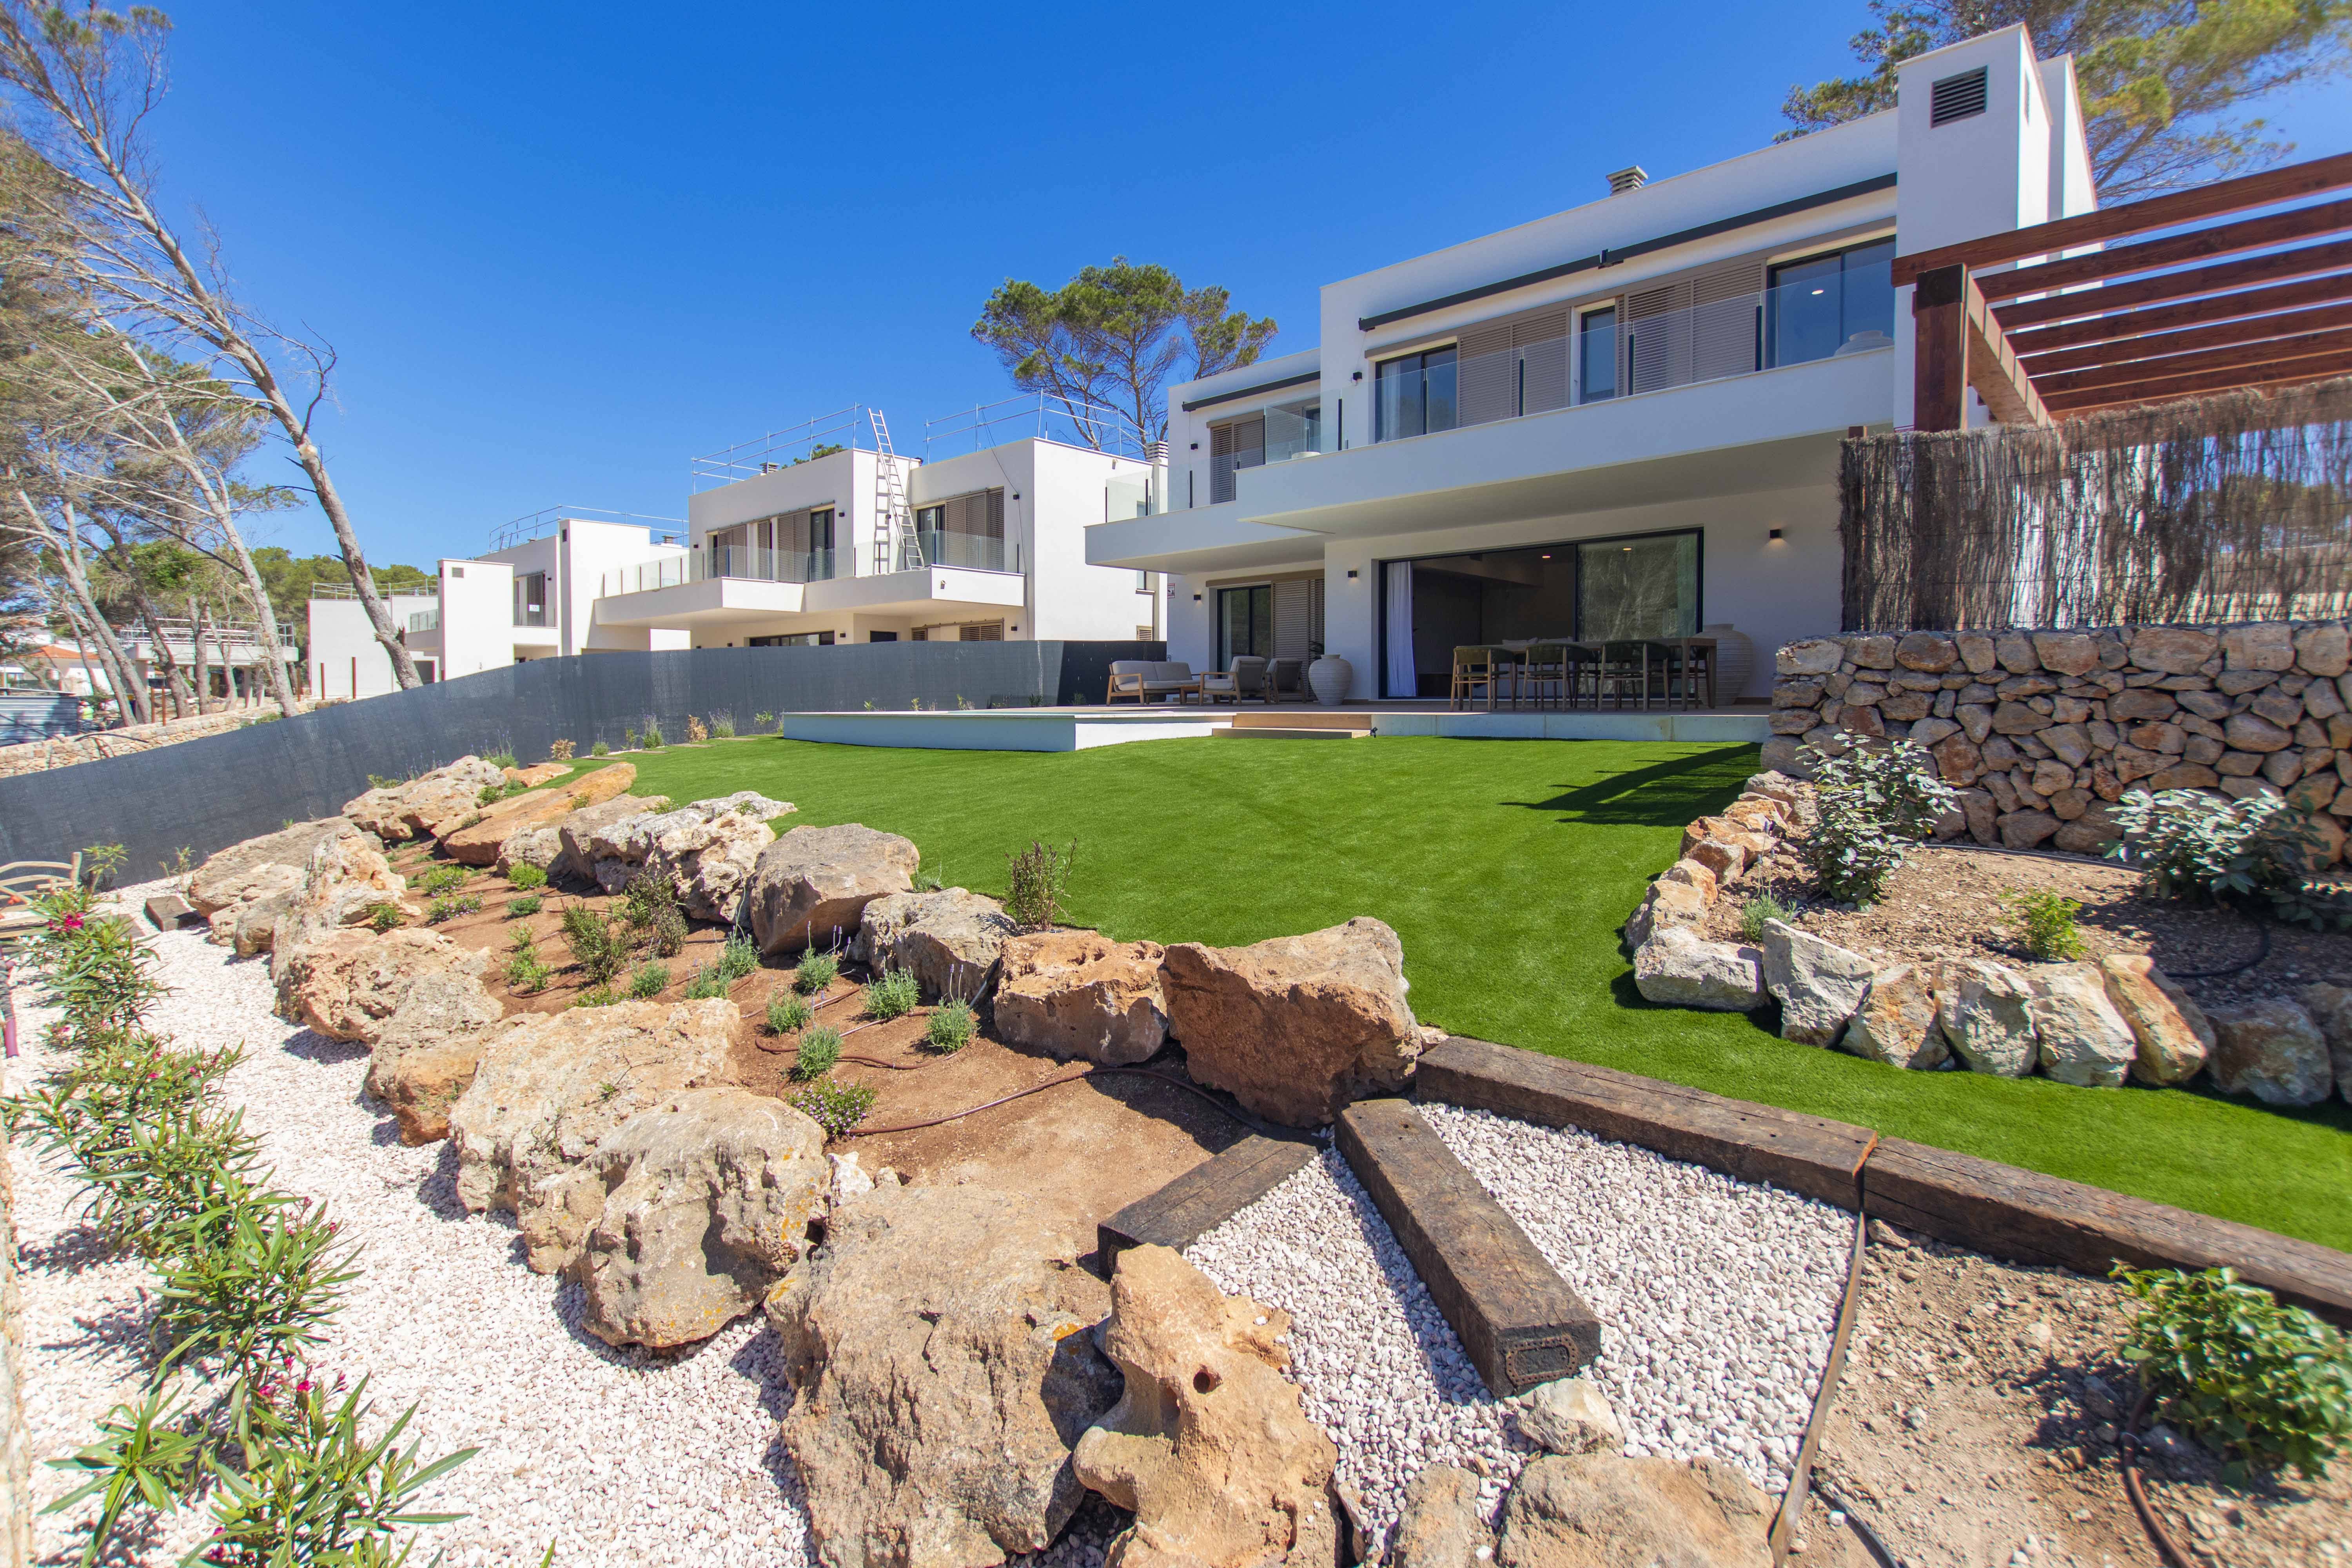 Promotion - Sa Llosa Homes, développement exclusif de 50 villas à Son Parc, Minorque.